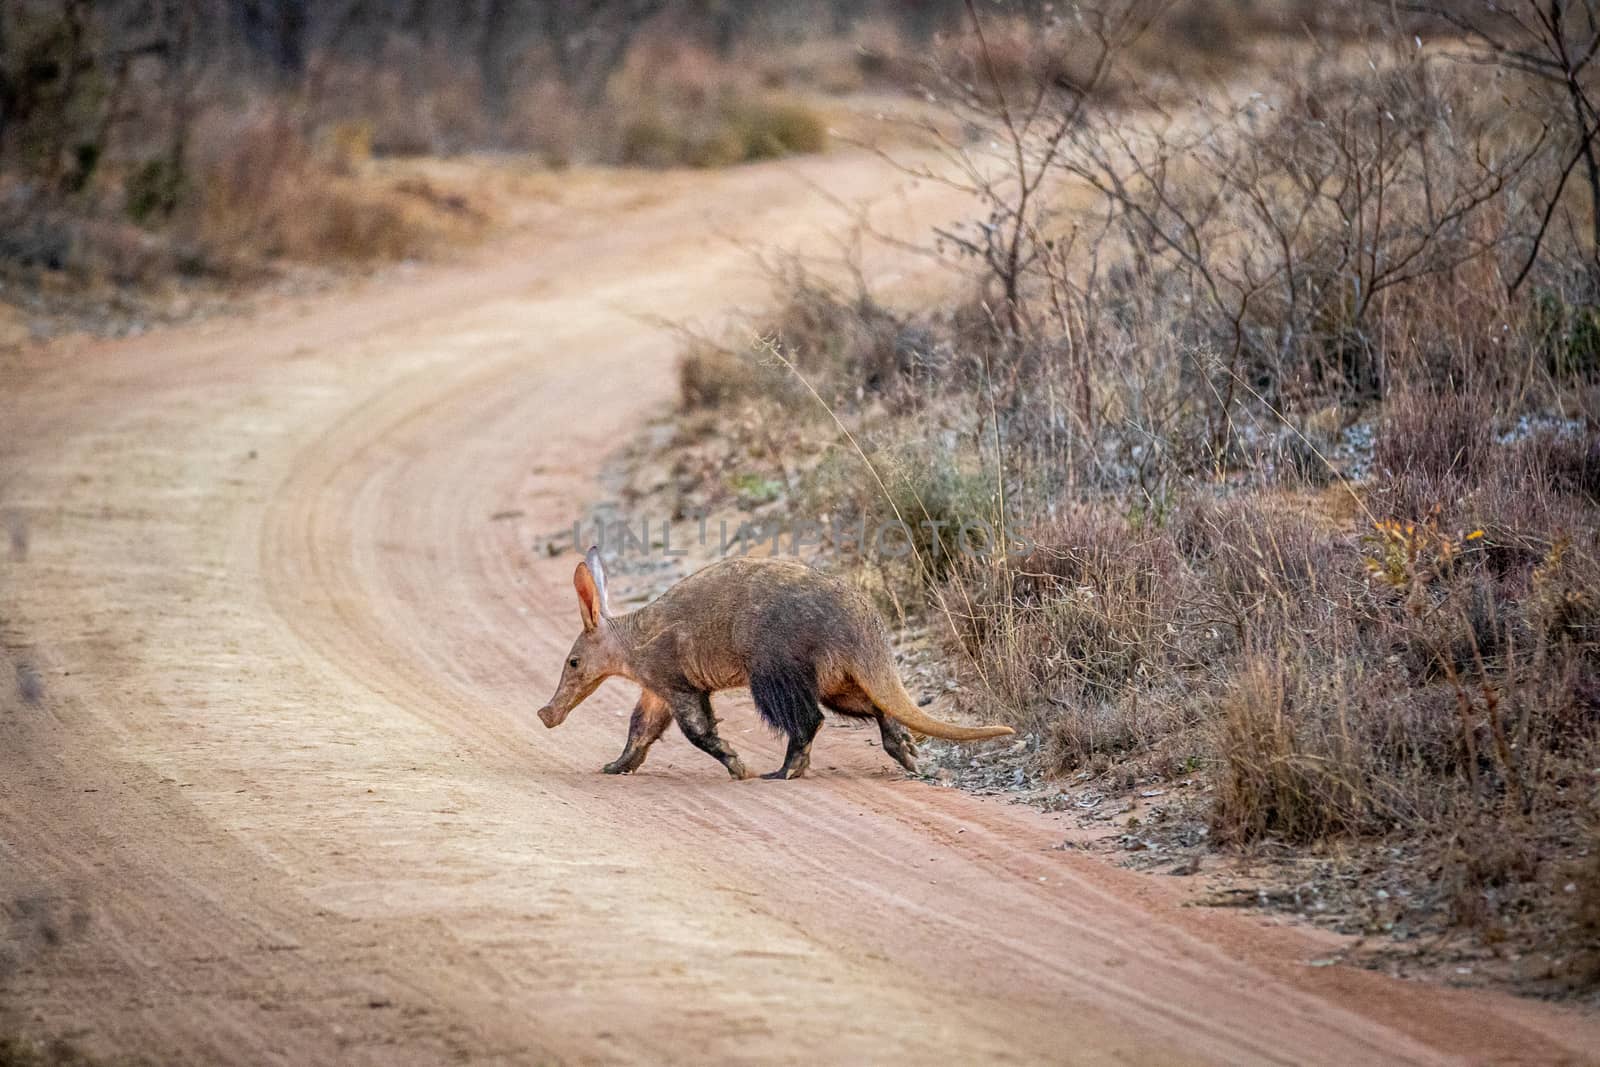 Aardvark crossing a bush road. by Simoneemanphotography